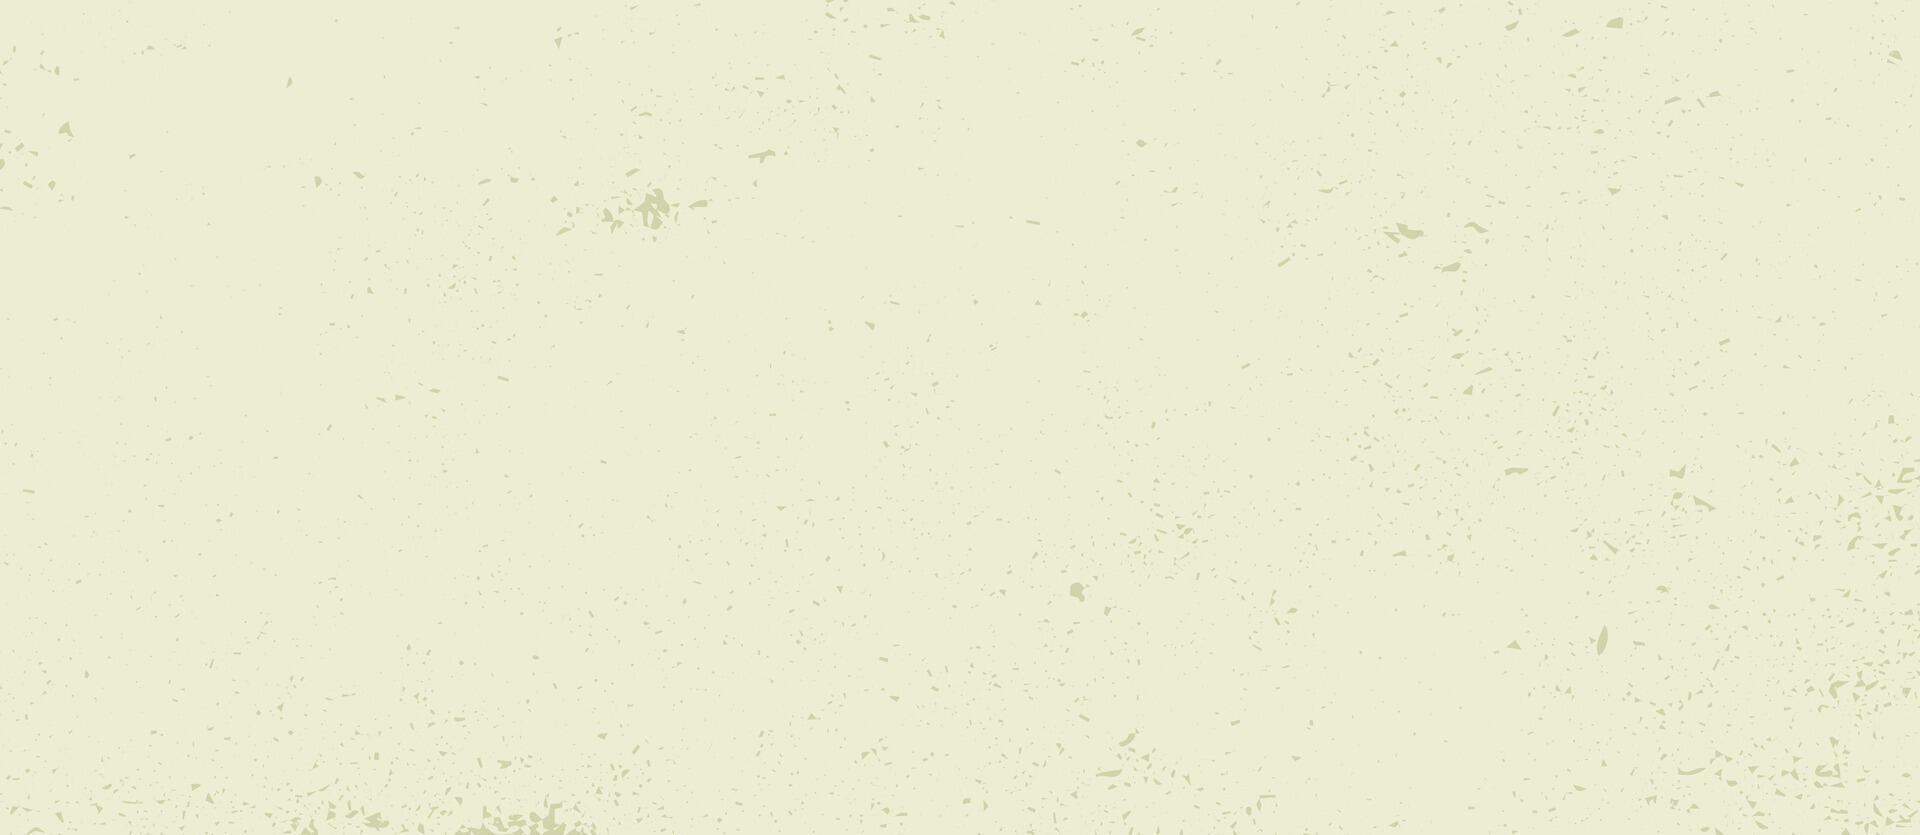 årgång grunge bakgrund med årgång prickar och fläckar. minimalistisk kornig äggskal papper textur. illustration vektor